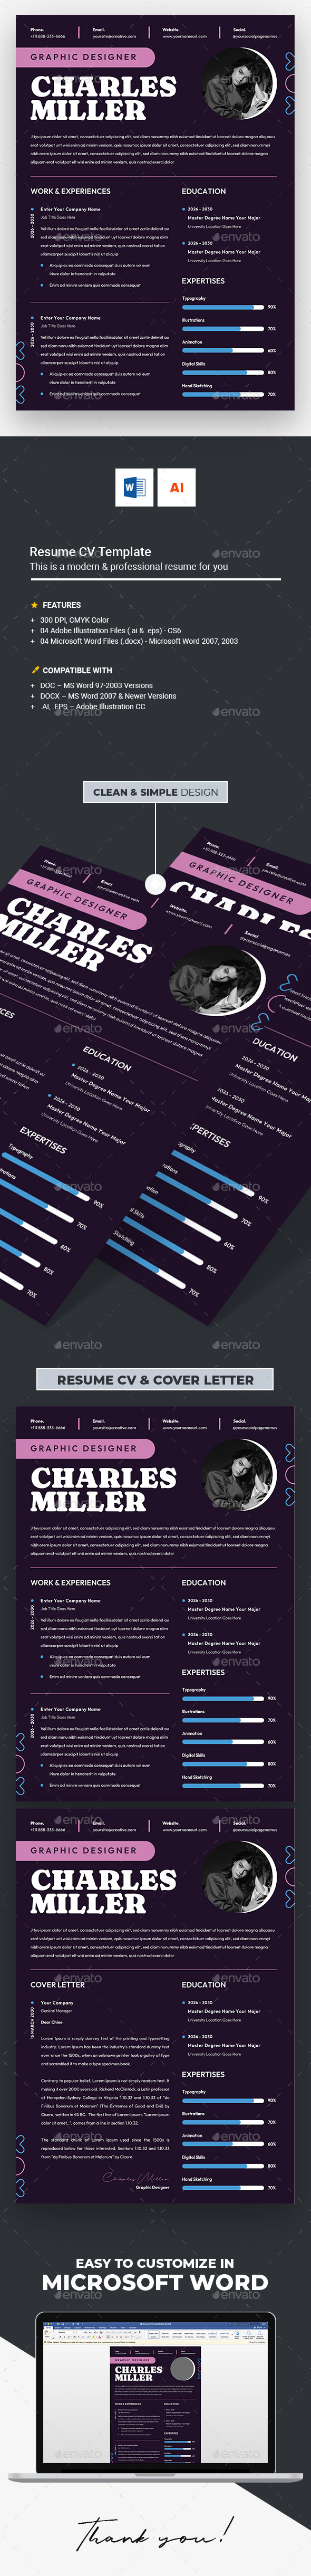 [DOWNLOAD]Resume CV